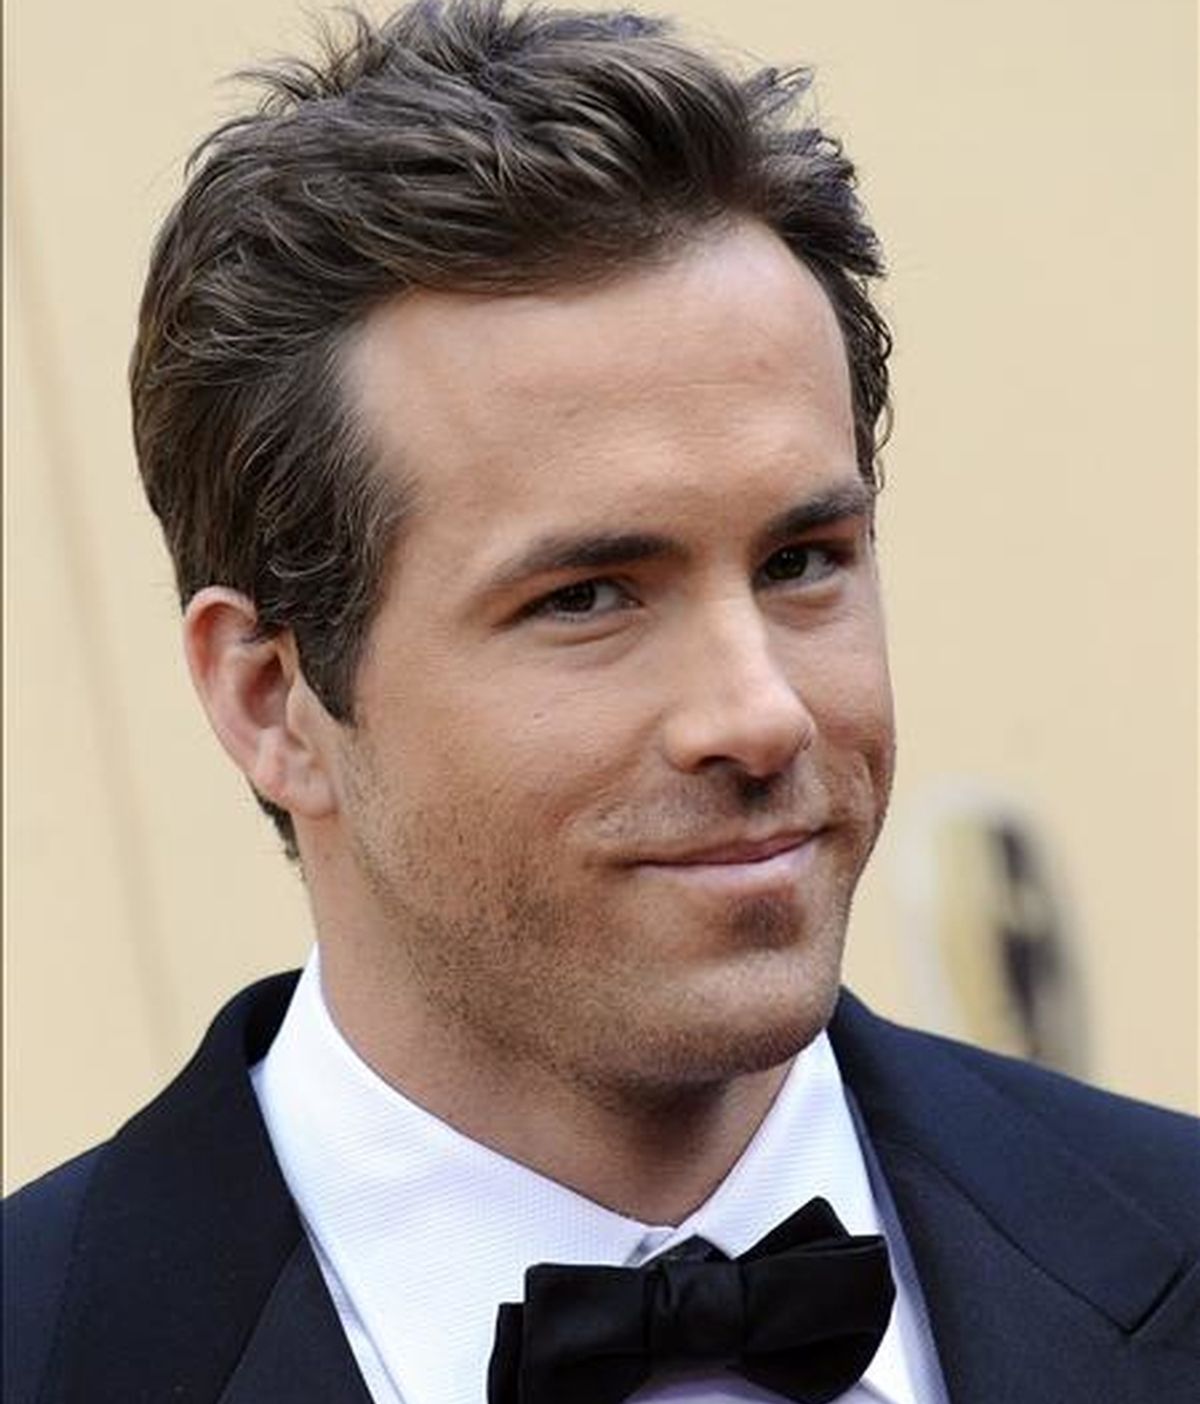 El actor Ryan Reynolds (en la imagen) se coronó como el más "sexy" por delante de Jon Hamm, de la premiada serie de televisión "Mad Men", y del modelo y actor en "Twilight" Kellan Lutz. EFE/Archivo